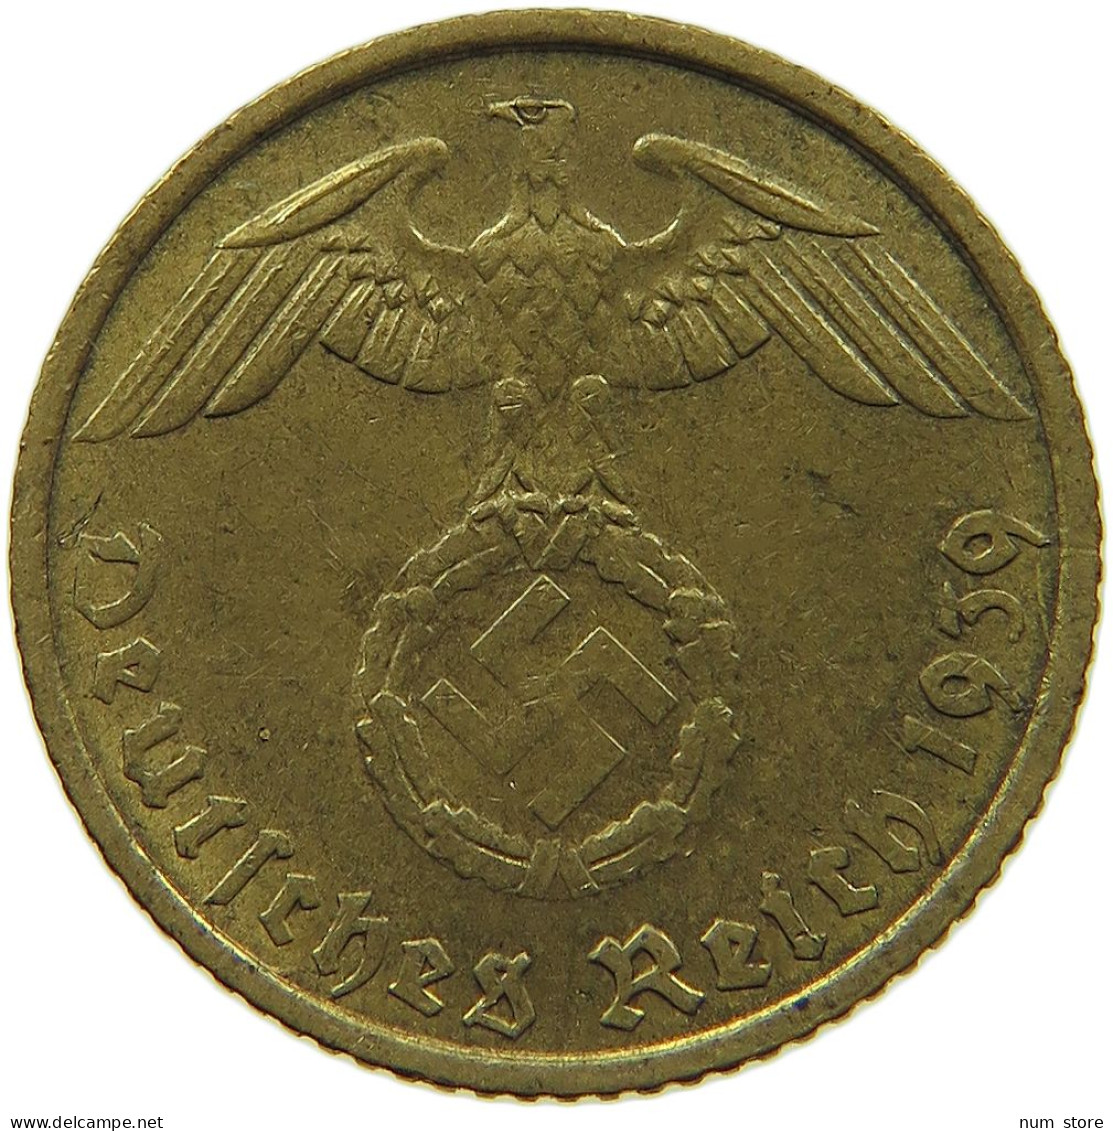 GERMANY 5 REICHSPFENNIG 1939 F #s091 0609 - 5 Reichspfennig